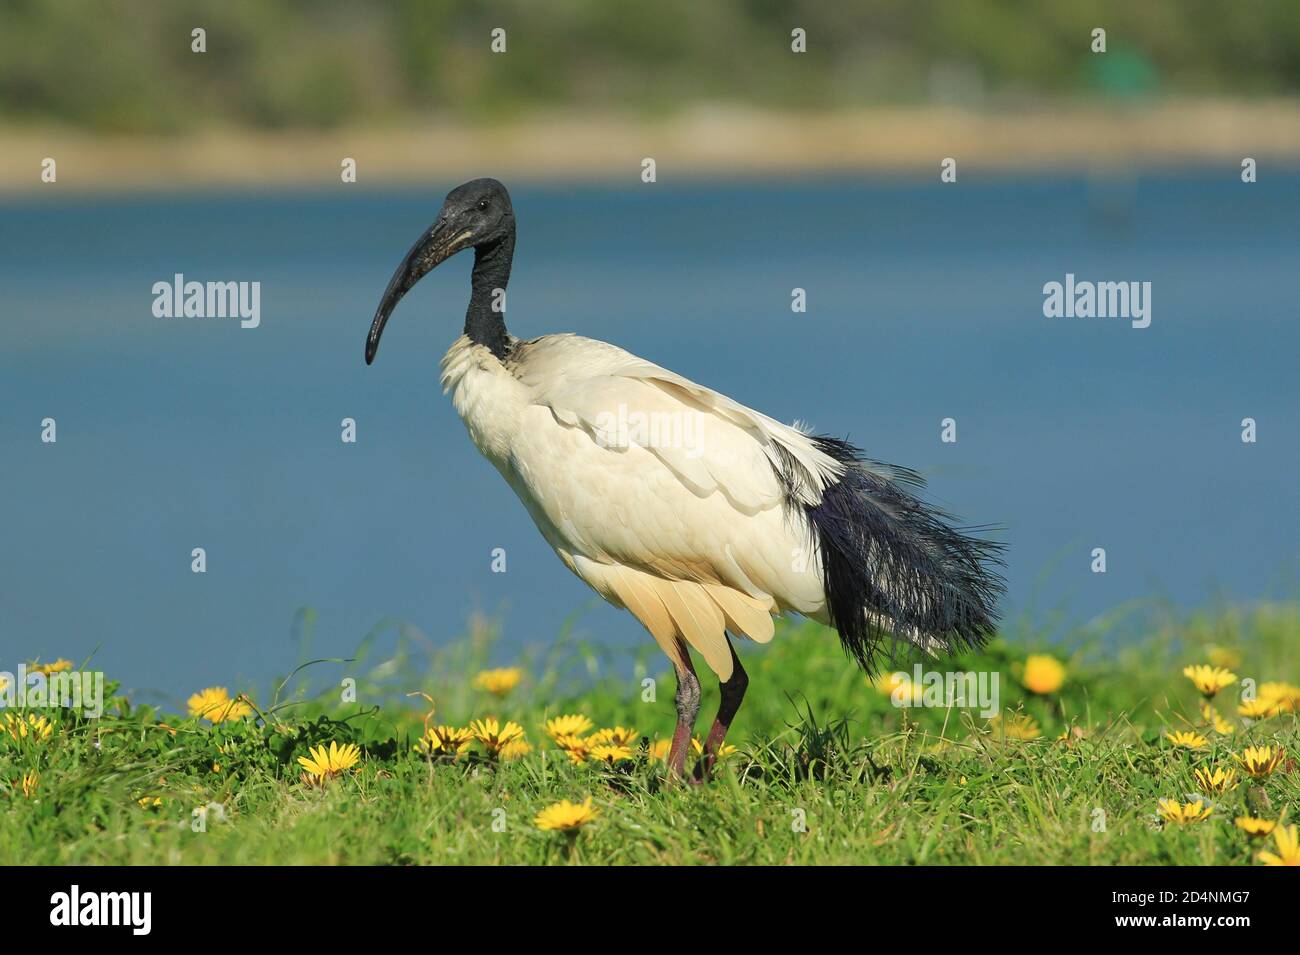 L'ibis sacro africano (Threskiornis aethiopicus) è un uccello della famiglia Threskiornitidae. È originario dell'Africa e del Foto Stock